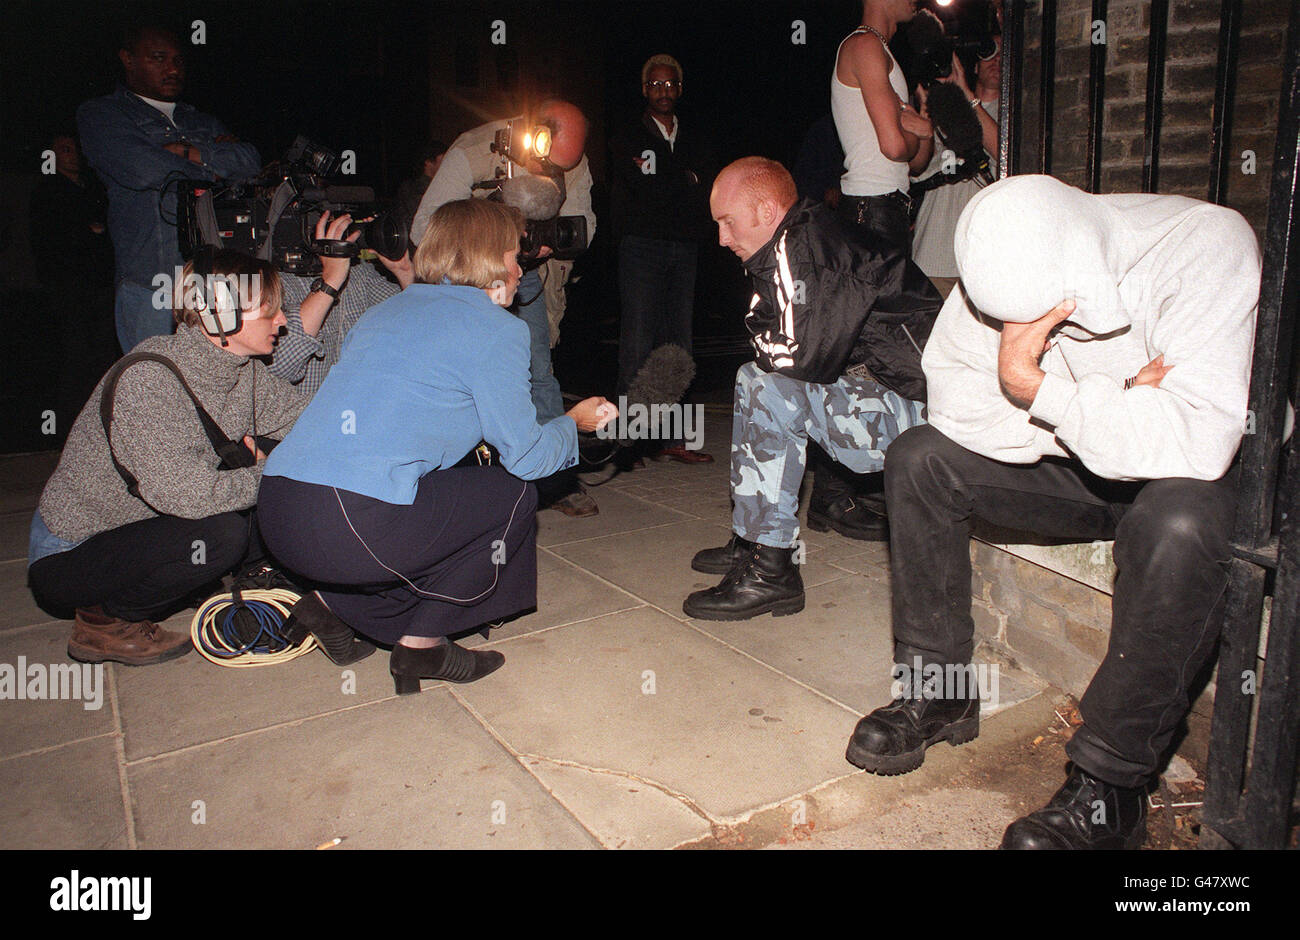 Nachrichten-Crews interviewen Menschen vor den Toren des Kensington Palace - der offiziellen Residenz von Diana, Prinzessin von Wales. Die Prinzessin wurde früher bei einem Autounfall in Paris getötet. Stockfoto